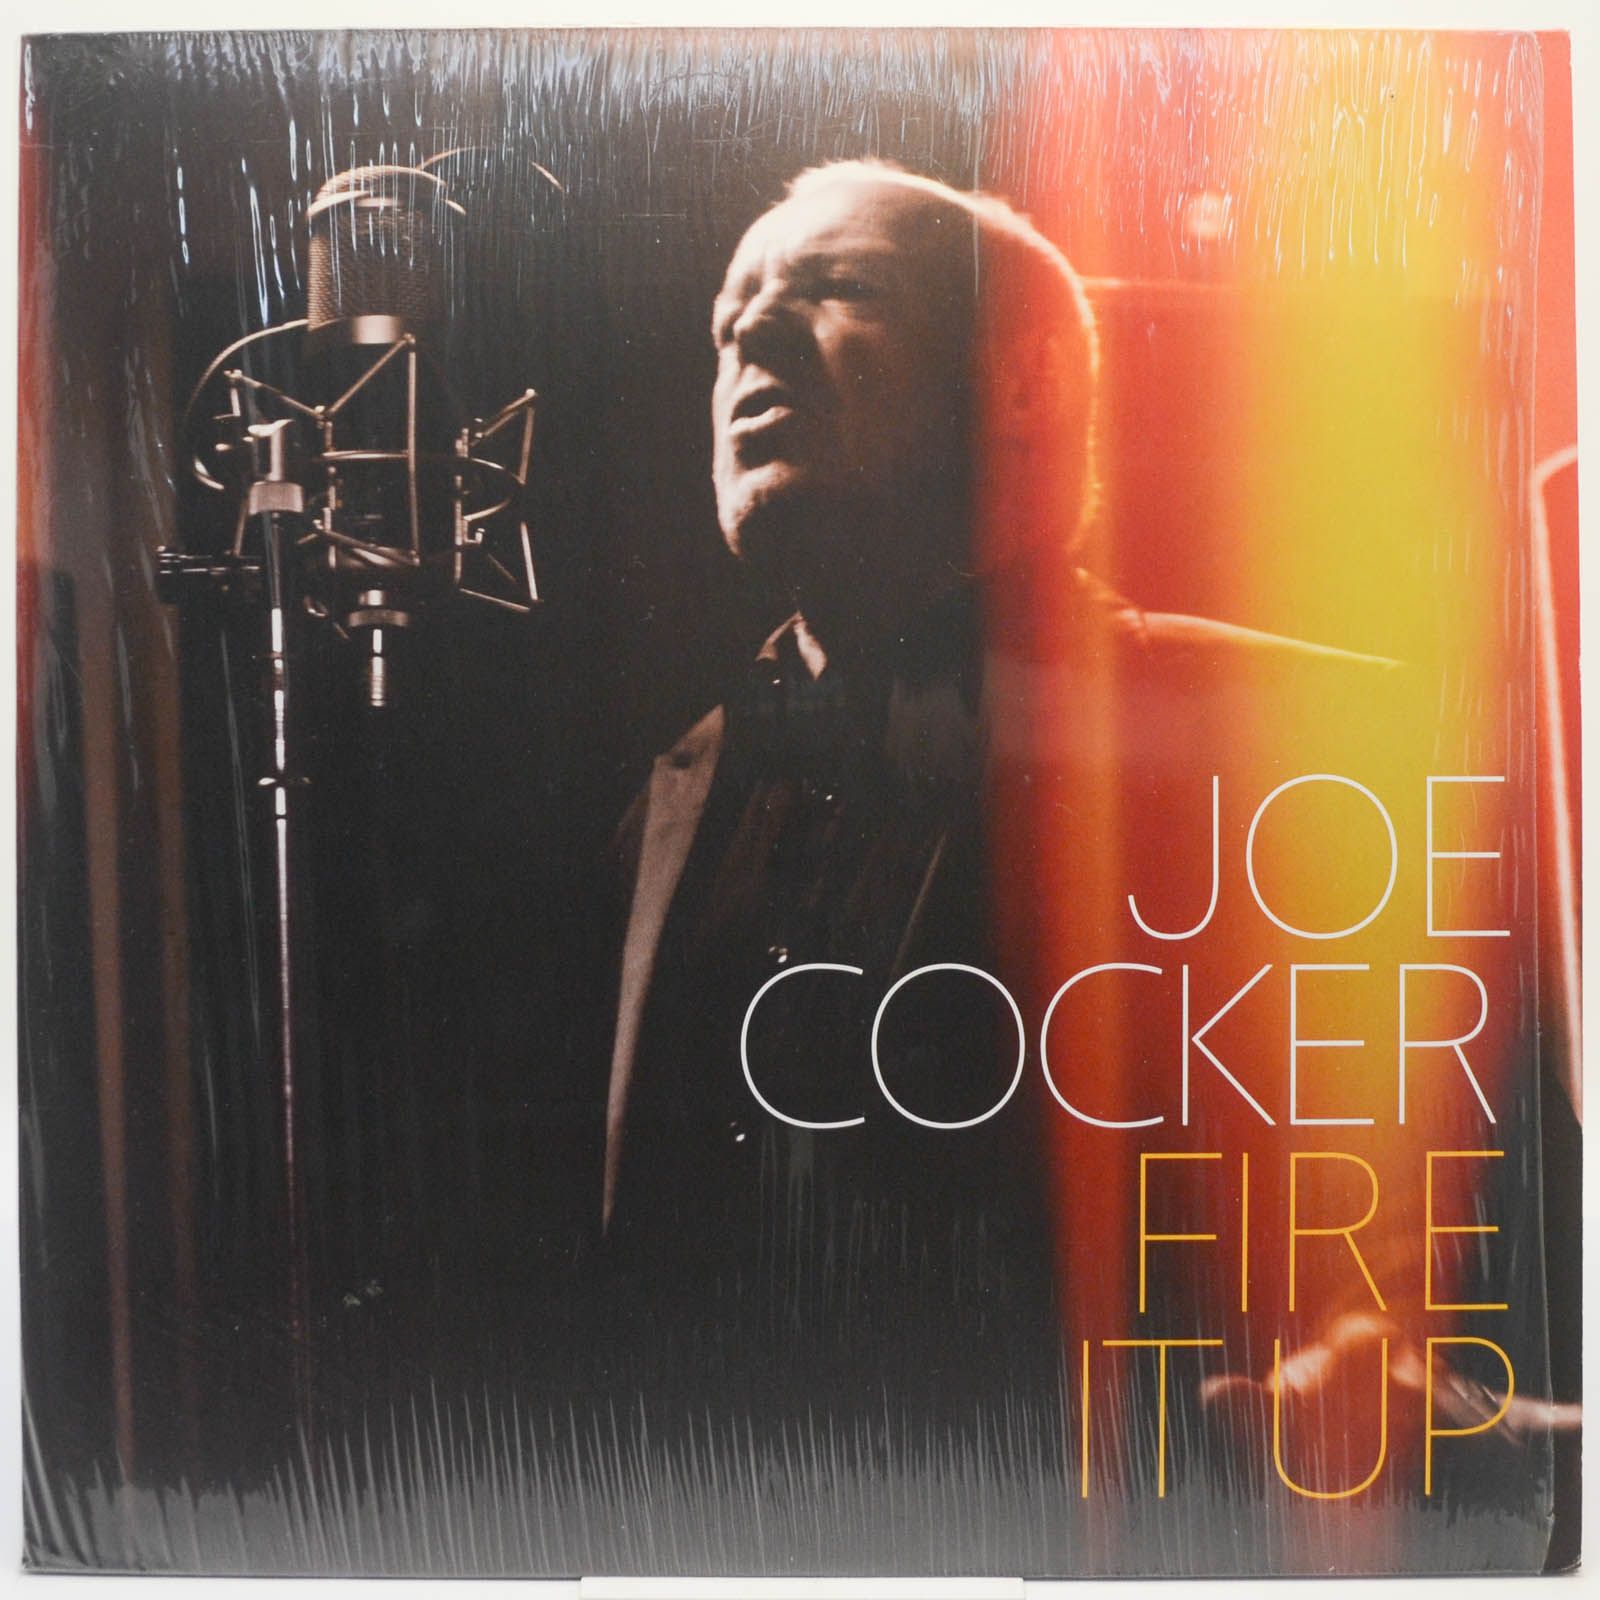 Joe Cocker — Fire It Up, 2012